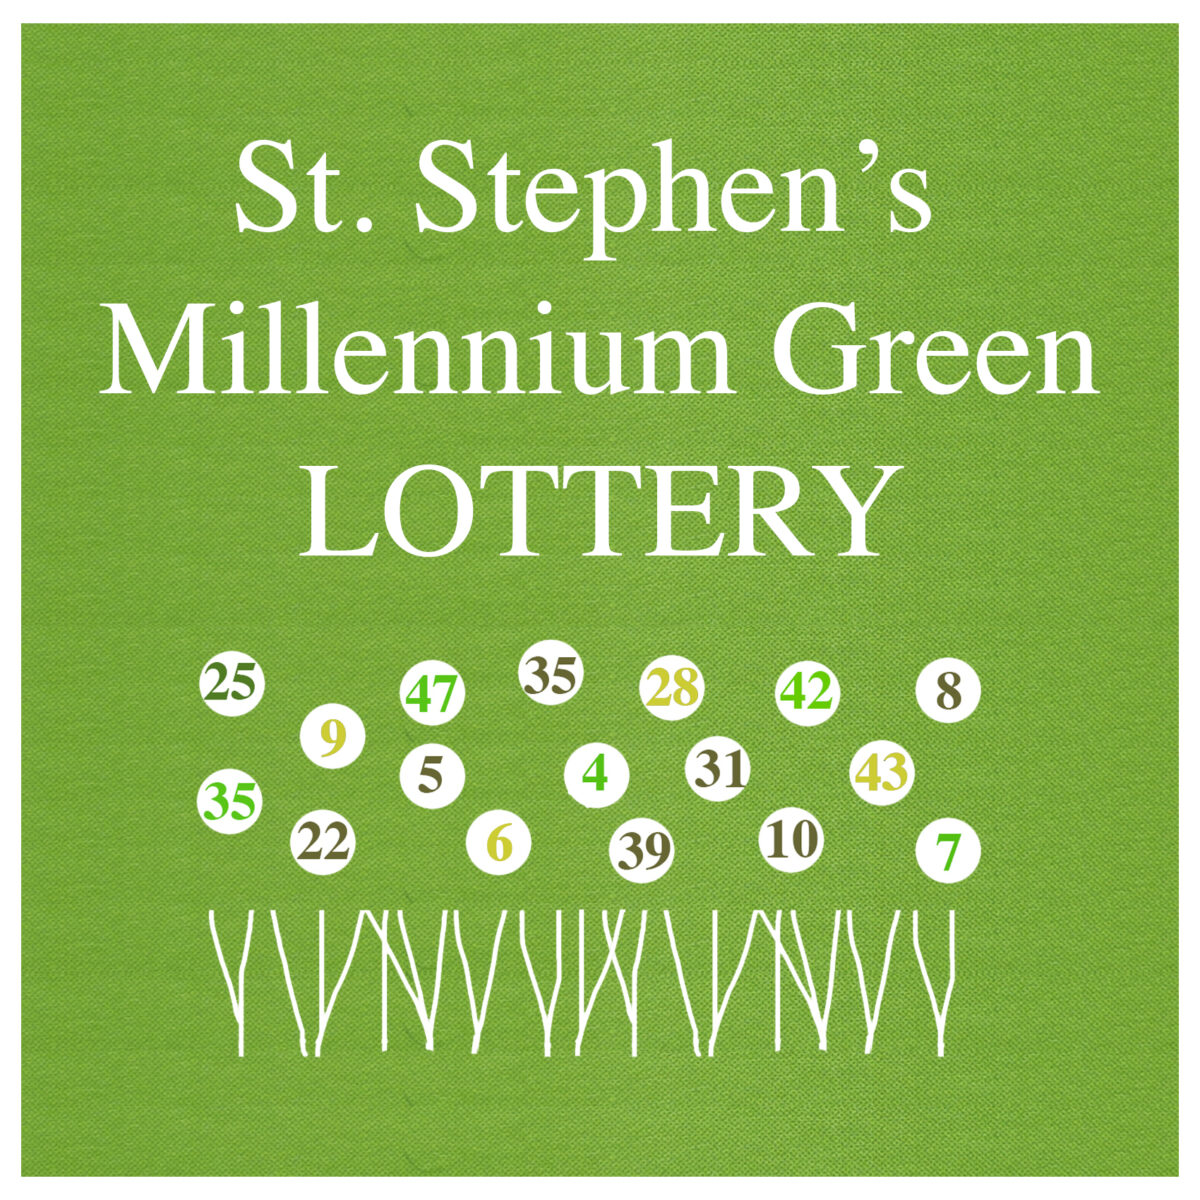 Millennium Green Lottery